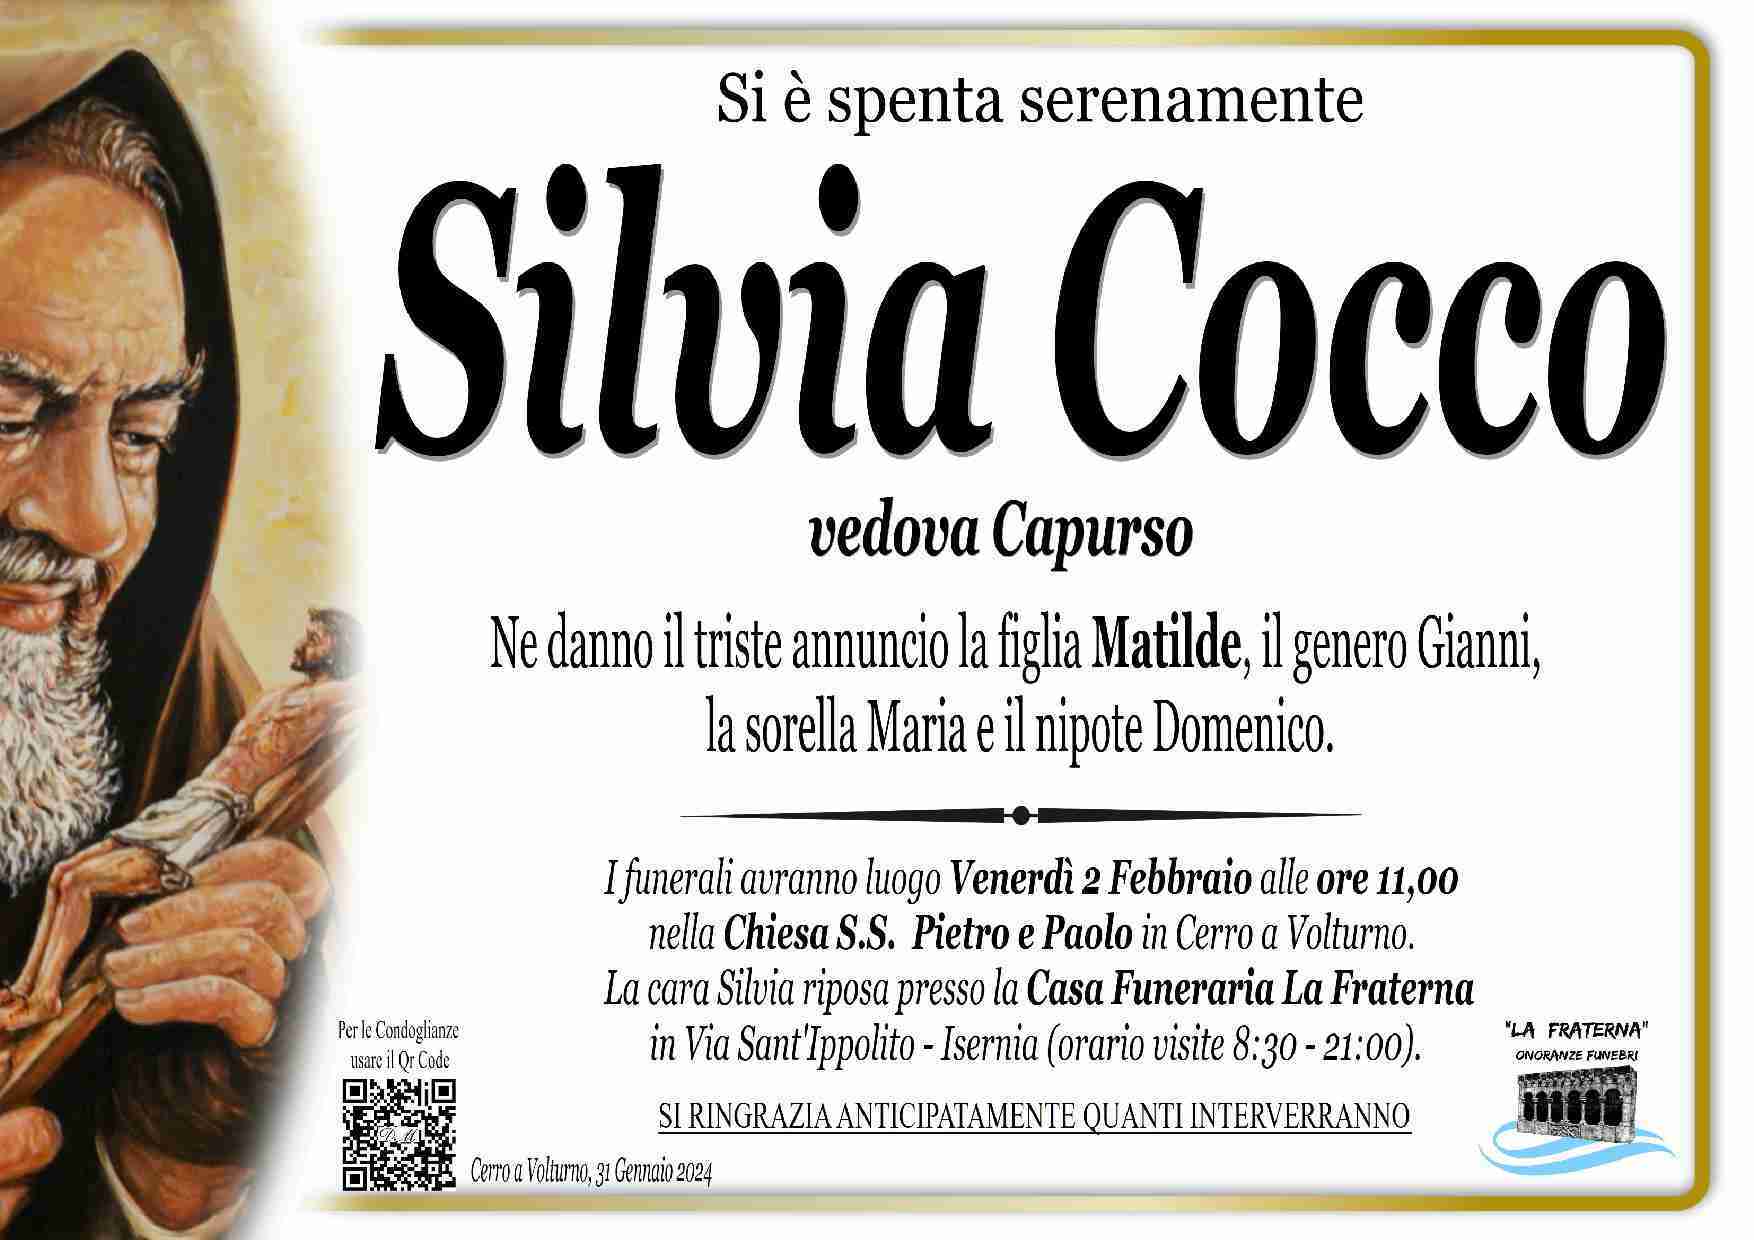 Silvia Cocco